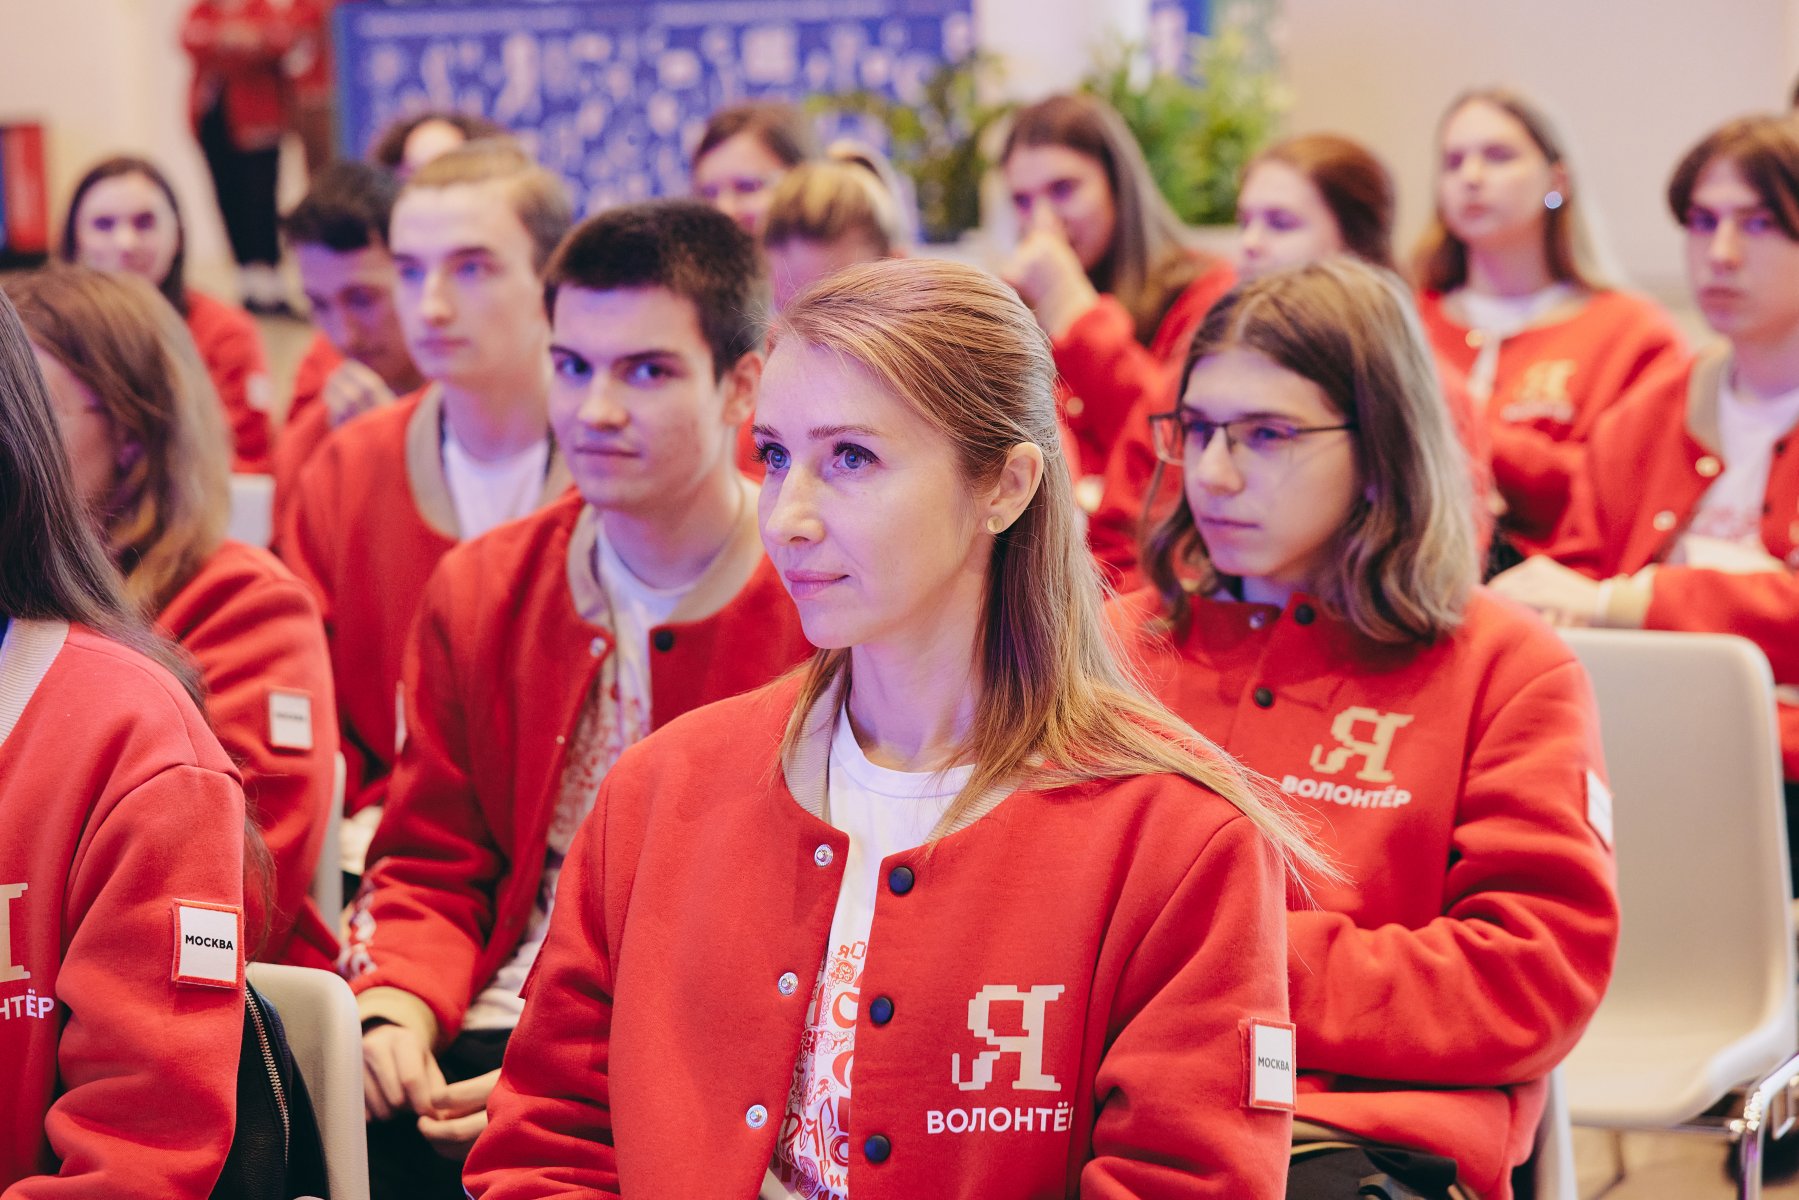 Наталья Сергунина: более 12,4 тысячи волонтеров помогают на выставке «Россия»